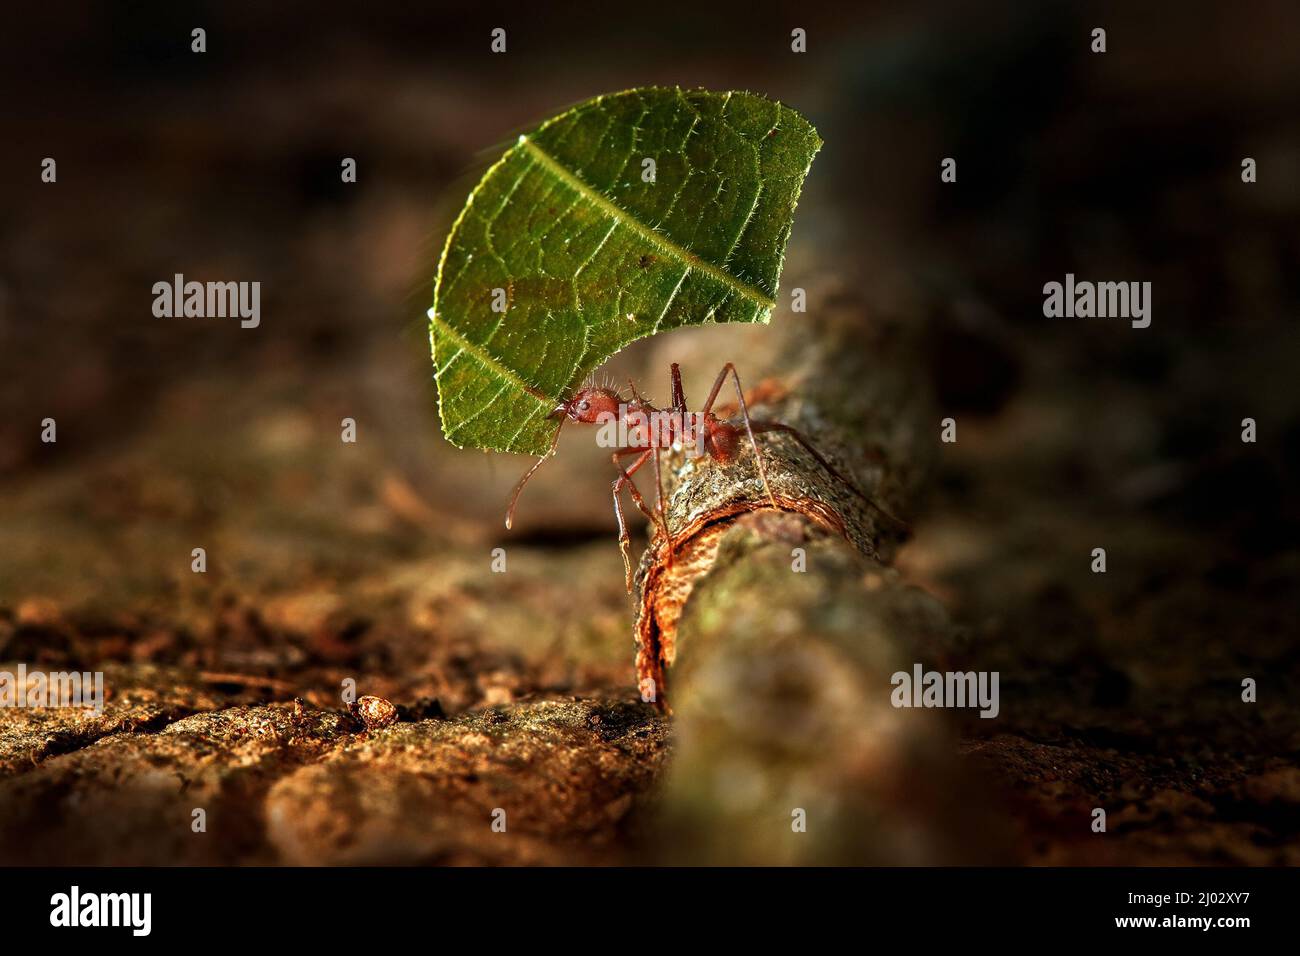 Atta Ameise, Leafcutter Ameisen, Costa Rica, Makro einer roten BlattlausenAmeise Stock Foto. Costa Rica, Blattschneideanter im Naturlebensraum. Tropic Insect w Stockfoto